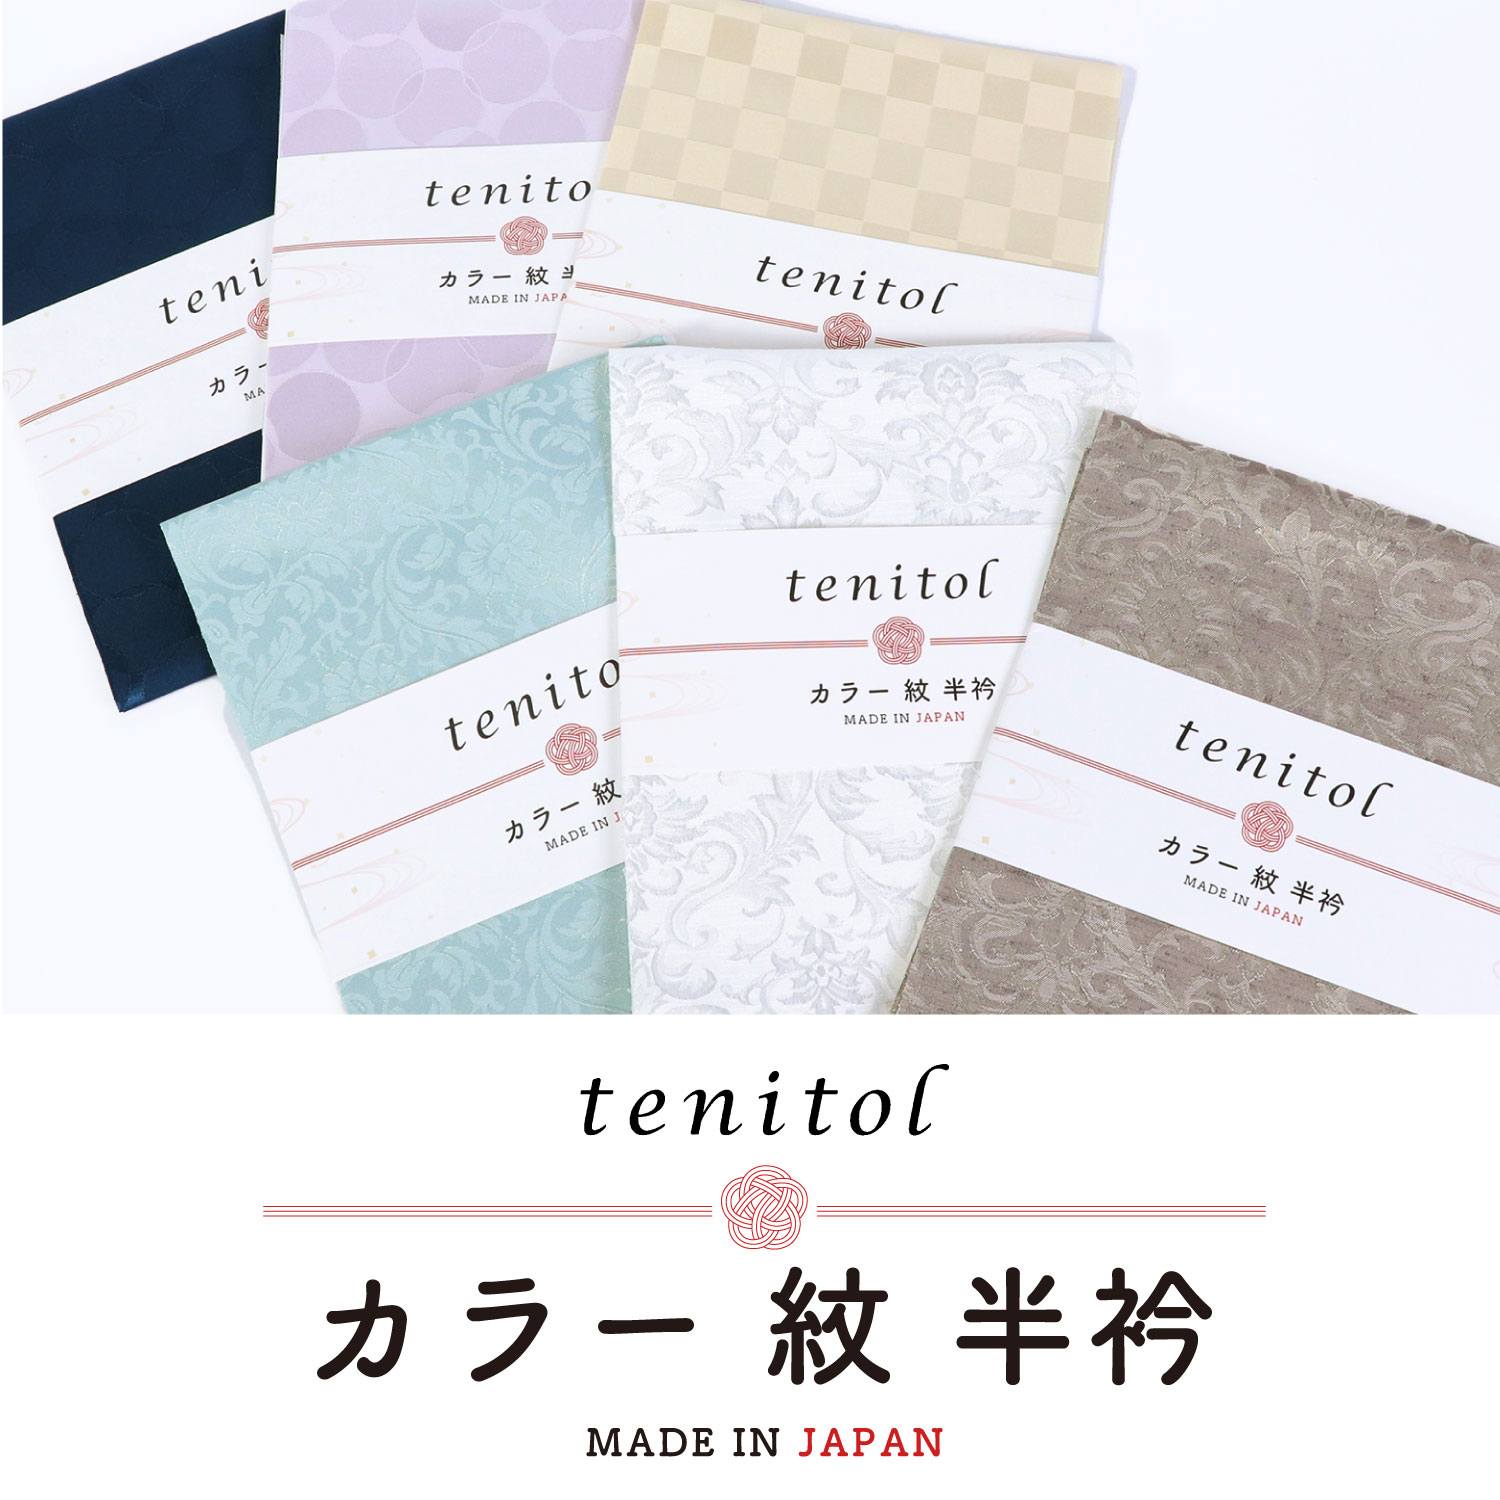 【選べる6タイプ】tenitol カラー紋半衿